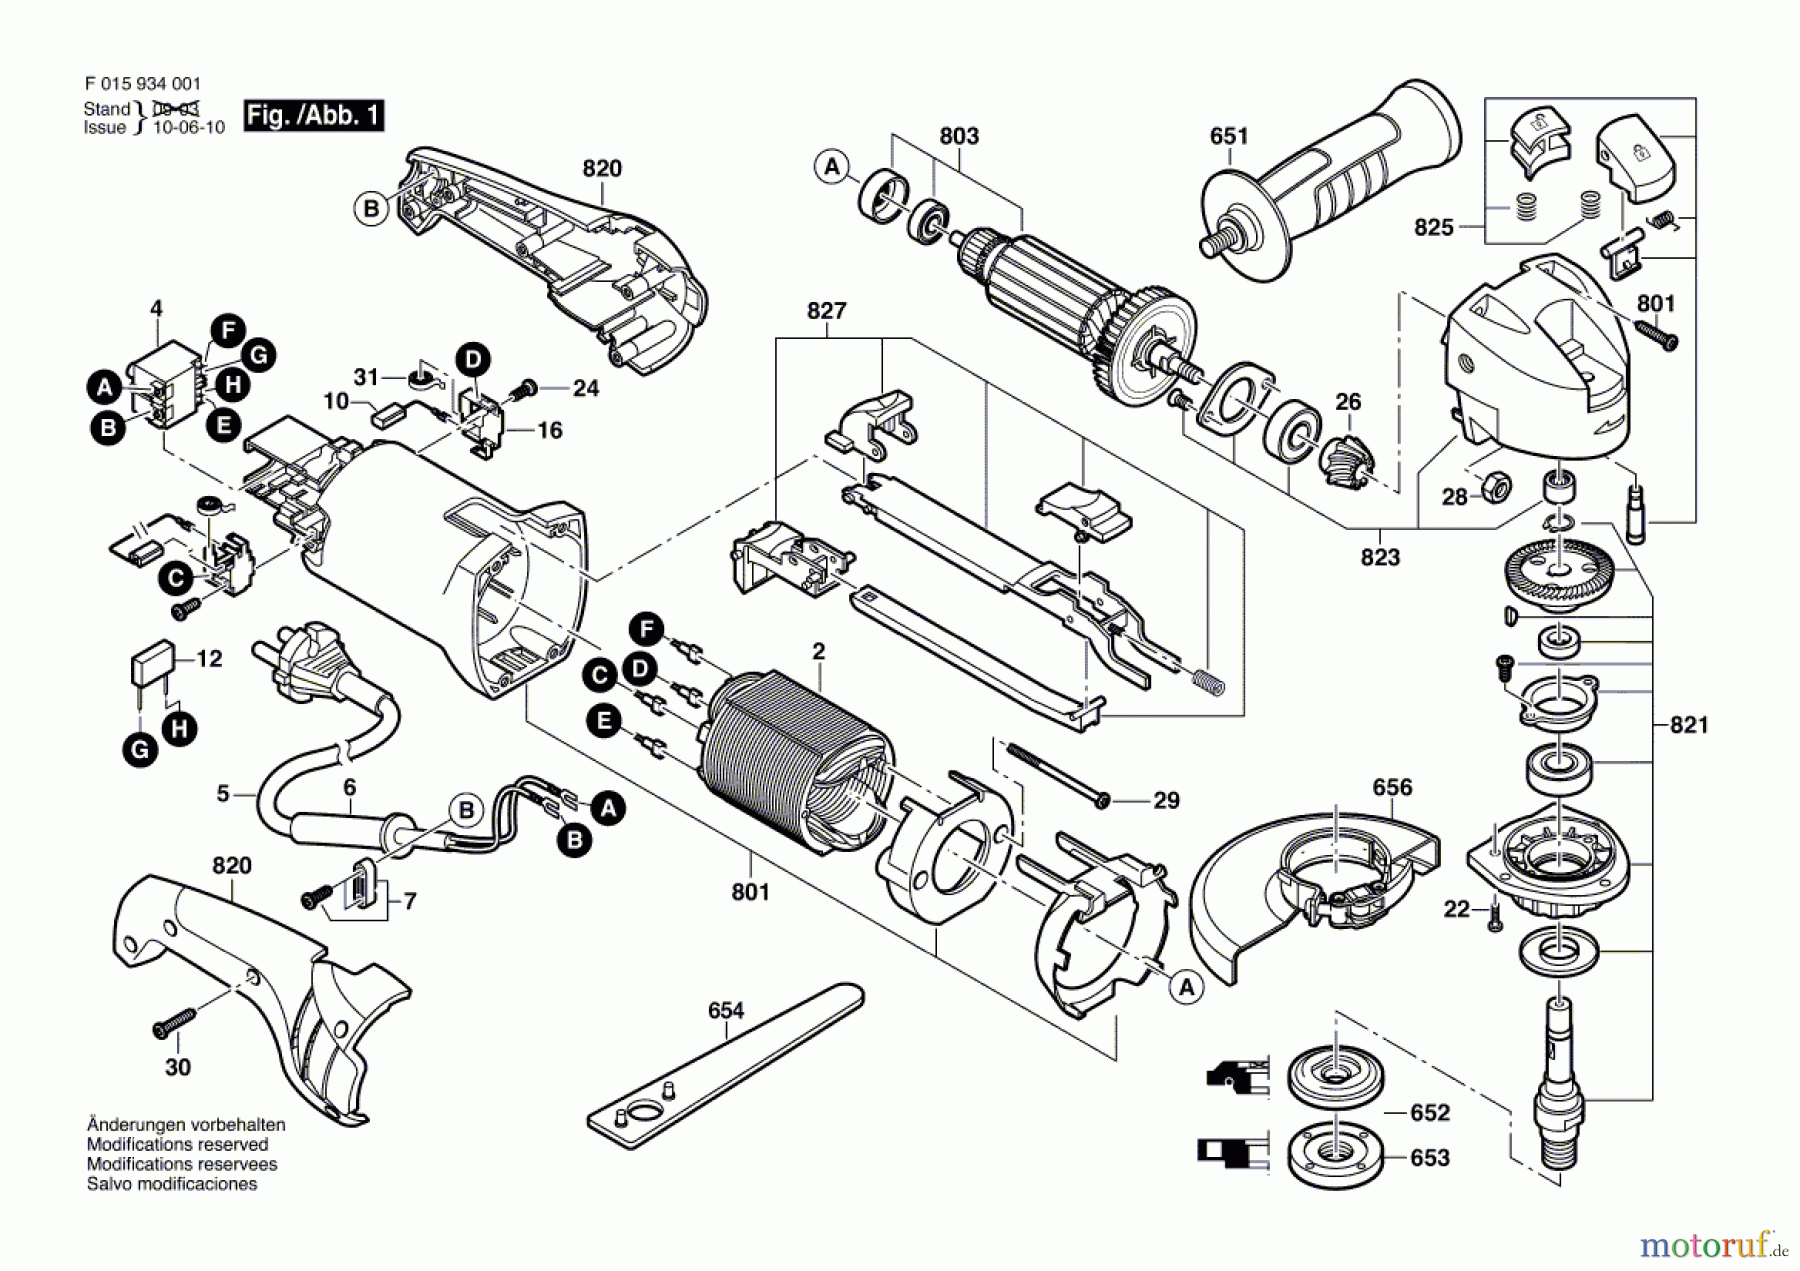  Bosch Werkzeug Winkelschleifer 9445 Seite 1